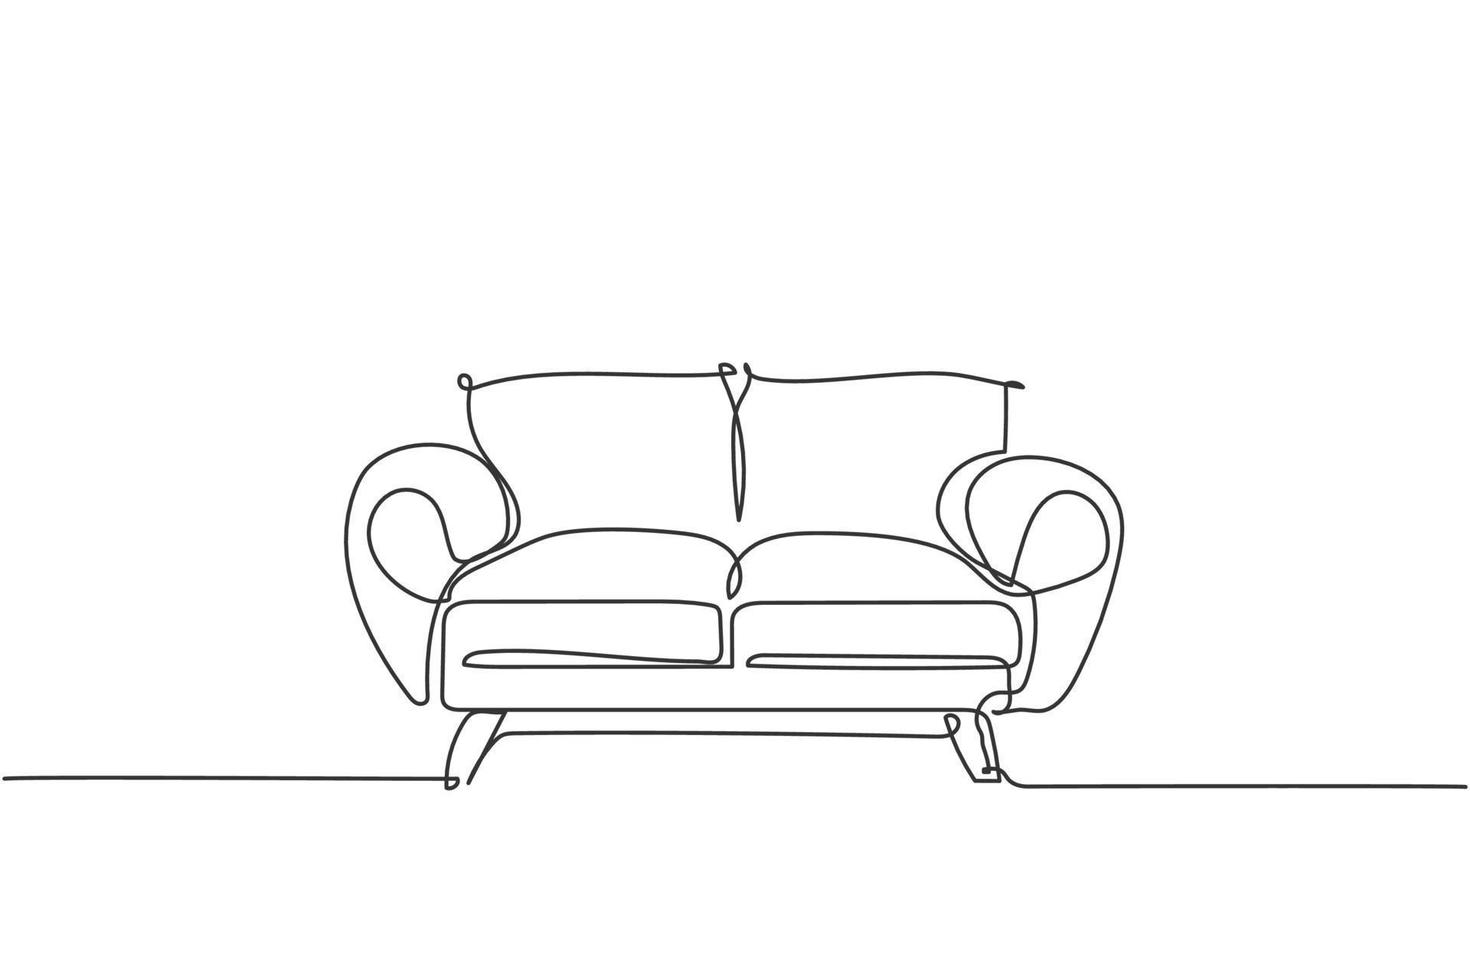 un seul dessin au trait d'un appareil ménager de canapé de luxe coûteux. élégance canapé confortable pour le concept d'équipement de meubles de salon. illustration vectorielle graphique de conception de dessin de ligne continue dynamique vecteur